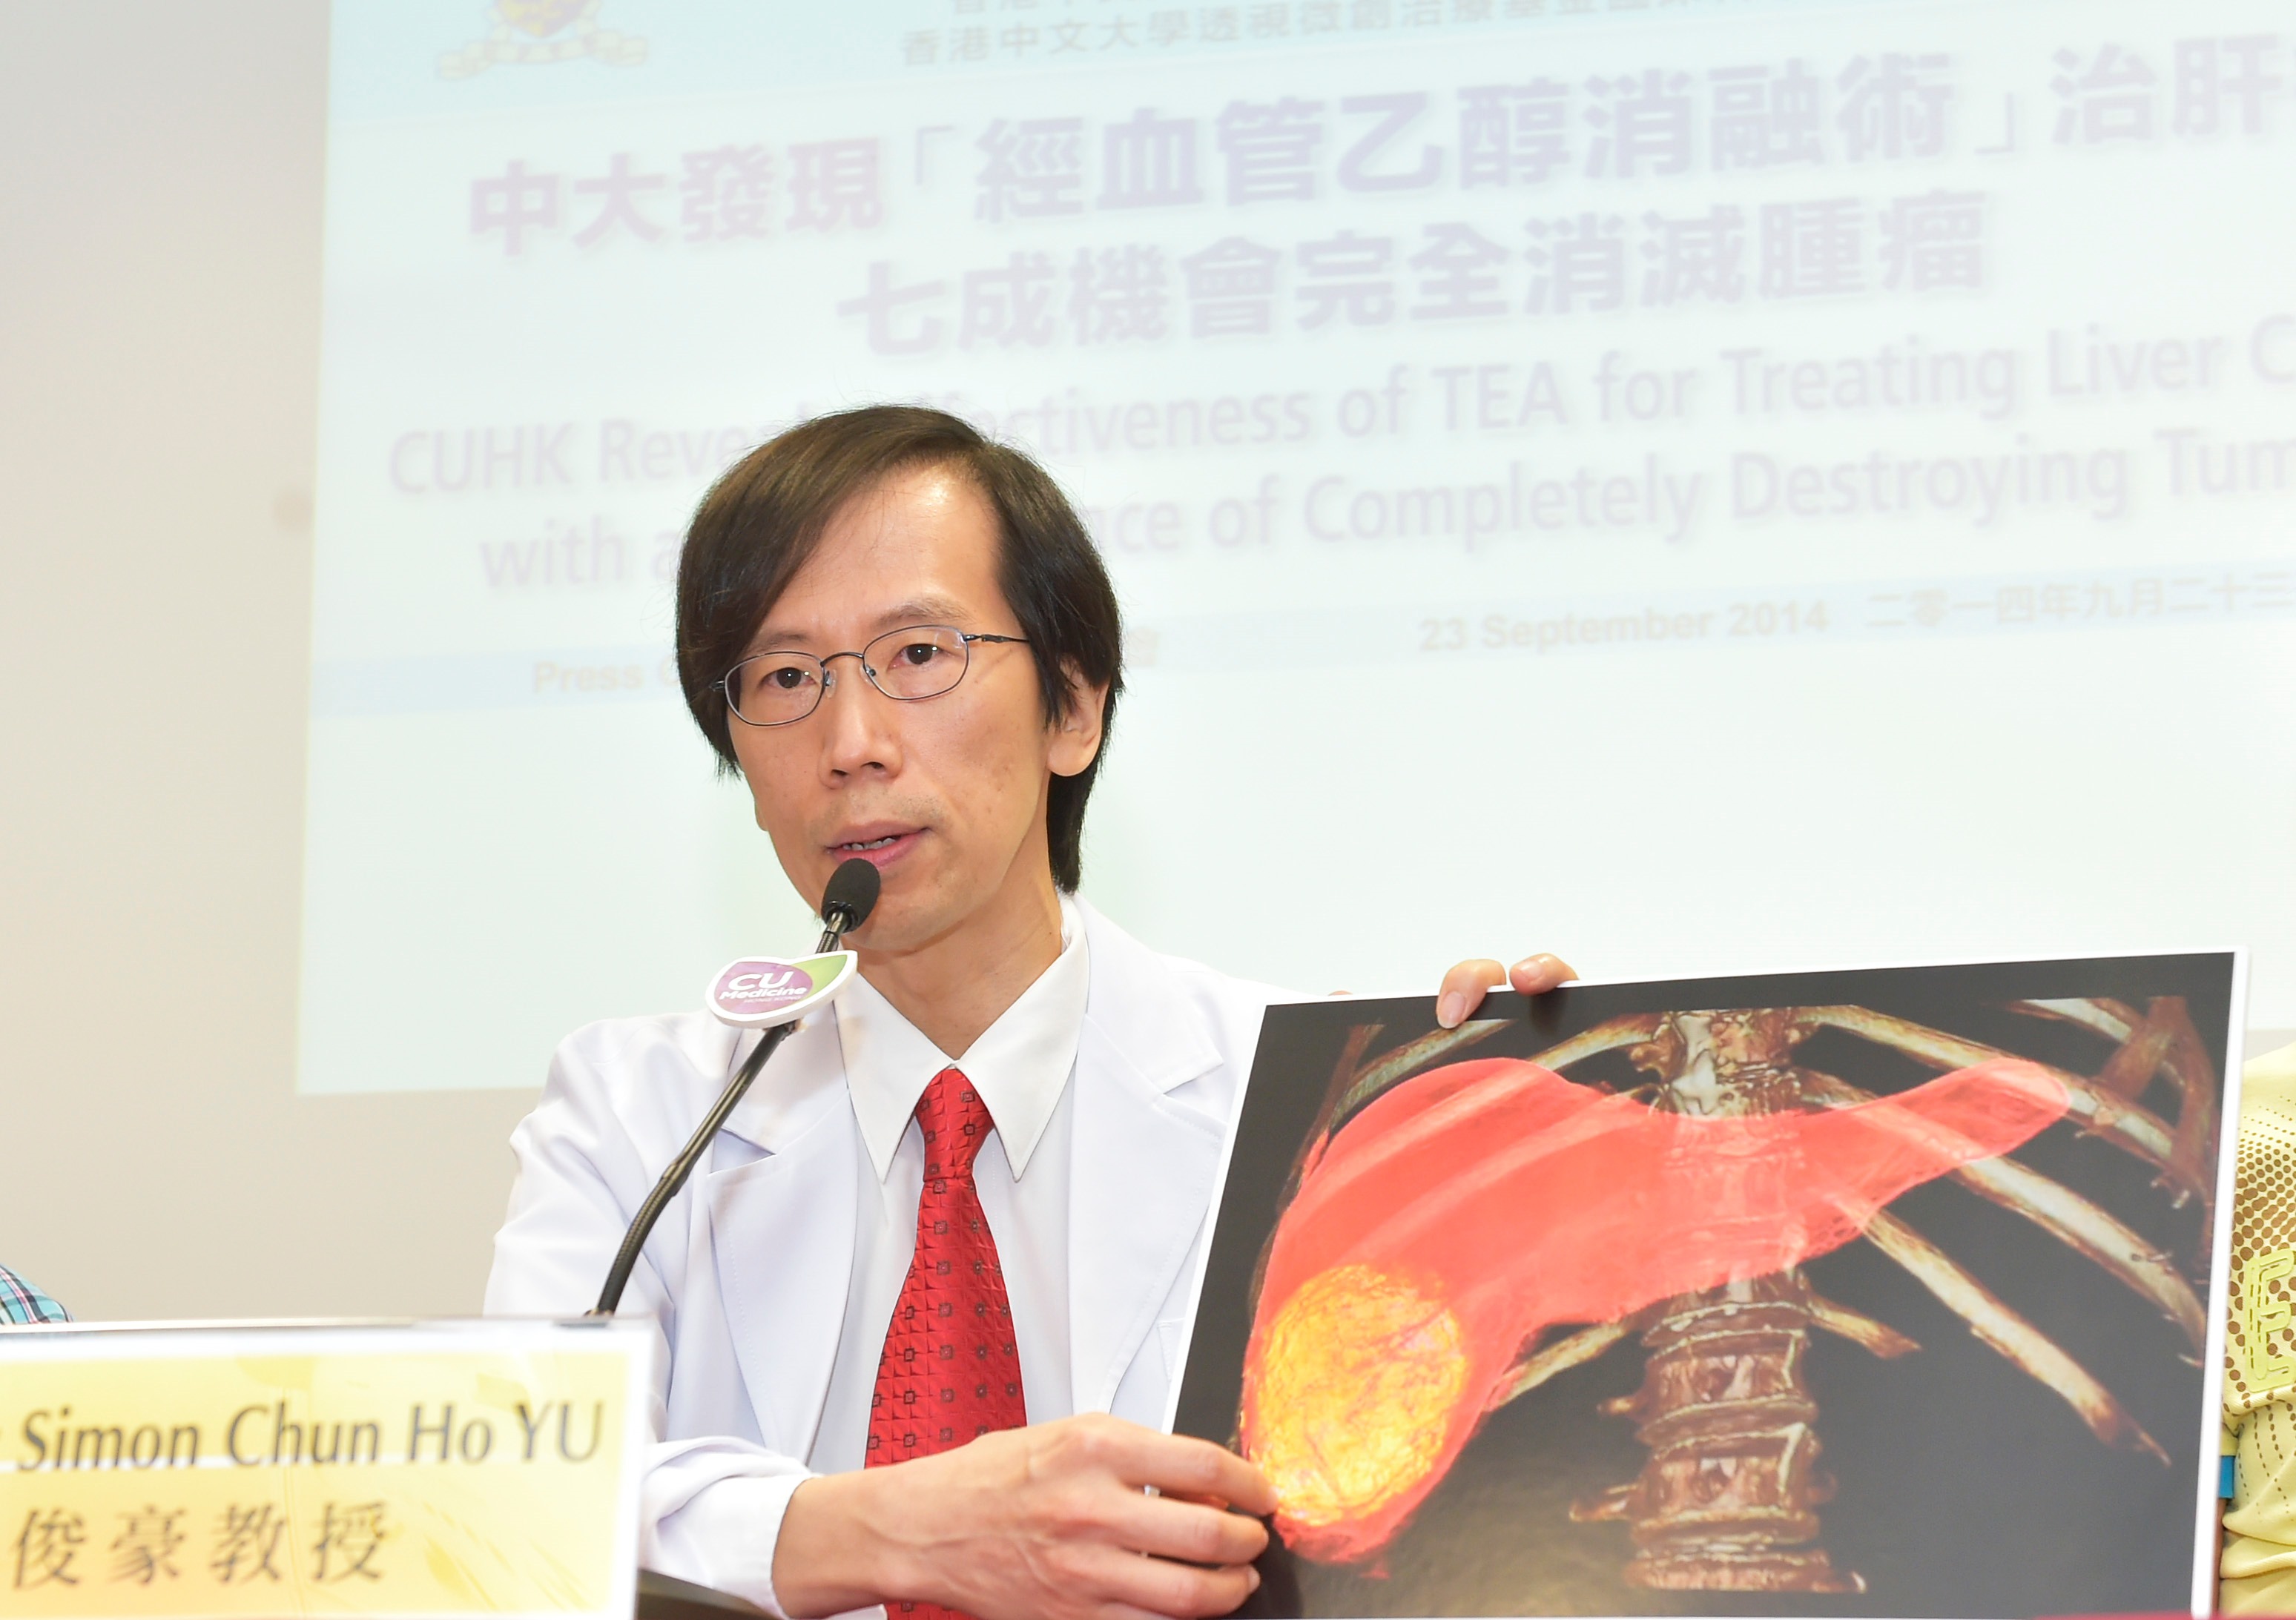 中大医学院影像及介入放射学系余俊豪教授介绍「经血管乙醇消融术」治疗肝癌的成效。